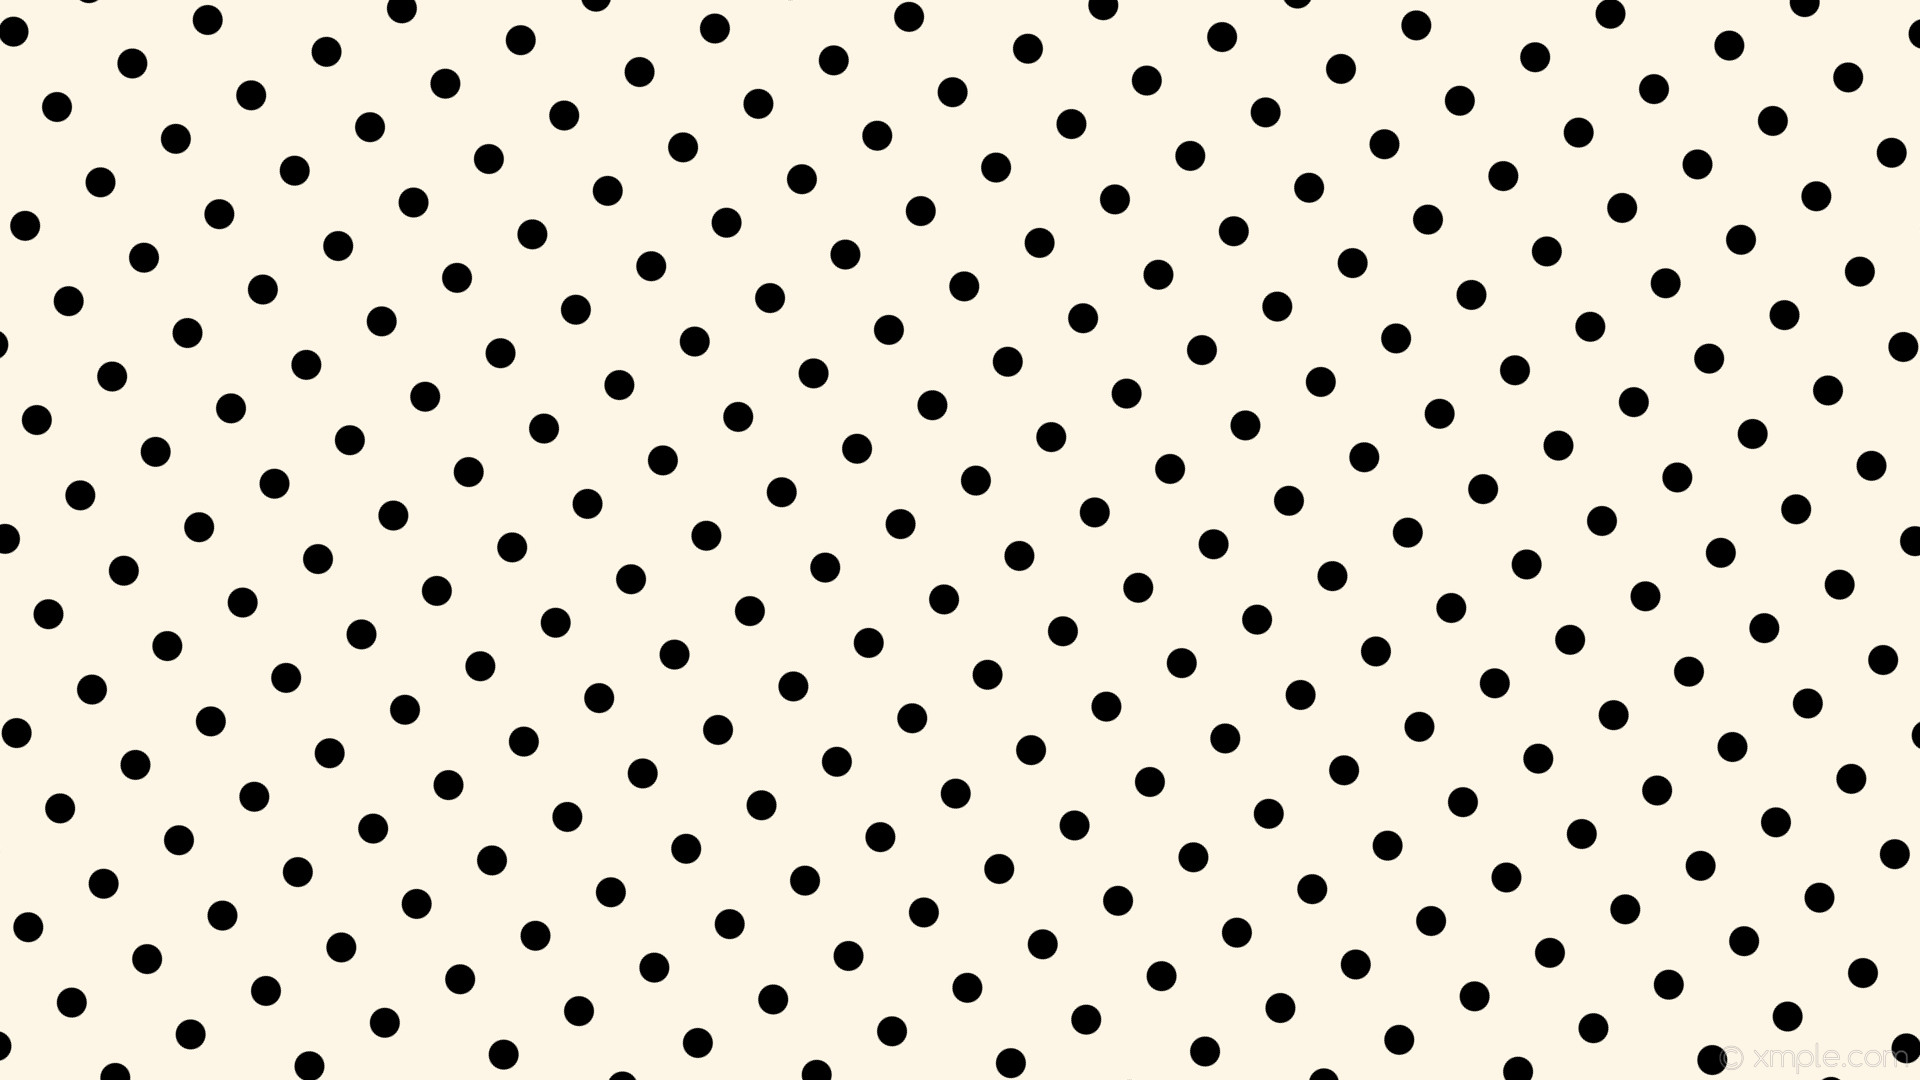 1920x1080 wallpaper white spots polka dots black old lace #fdf5e6 #000000 210Â° 30px  87px